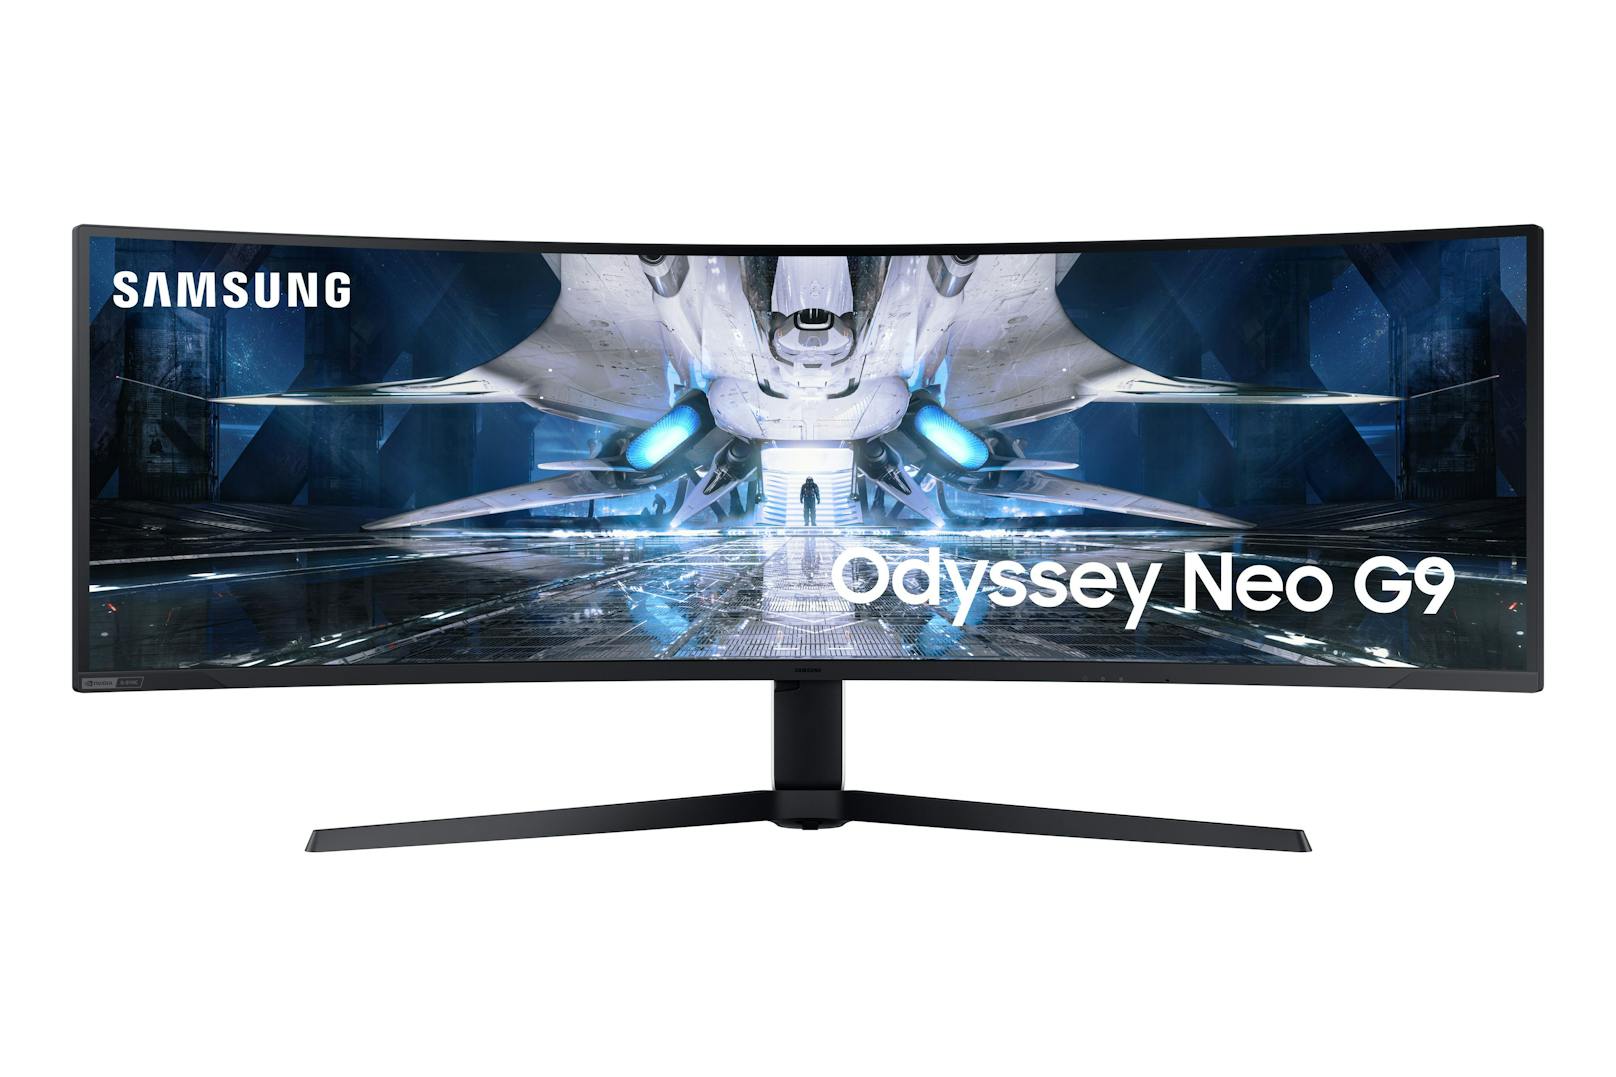 Odyssey Neo G9: Samsung präsentiert die Zukunft des Gamings.